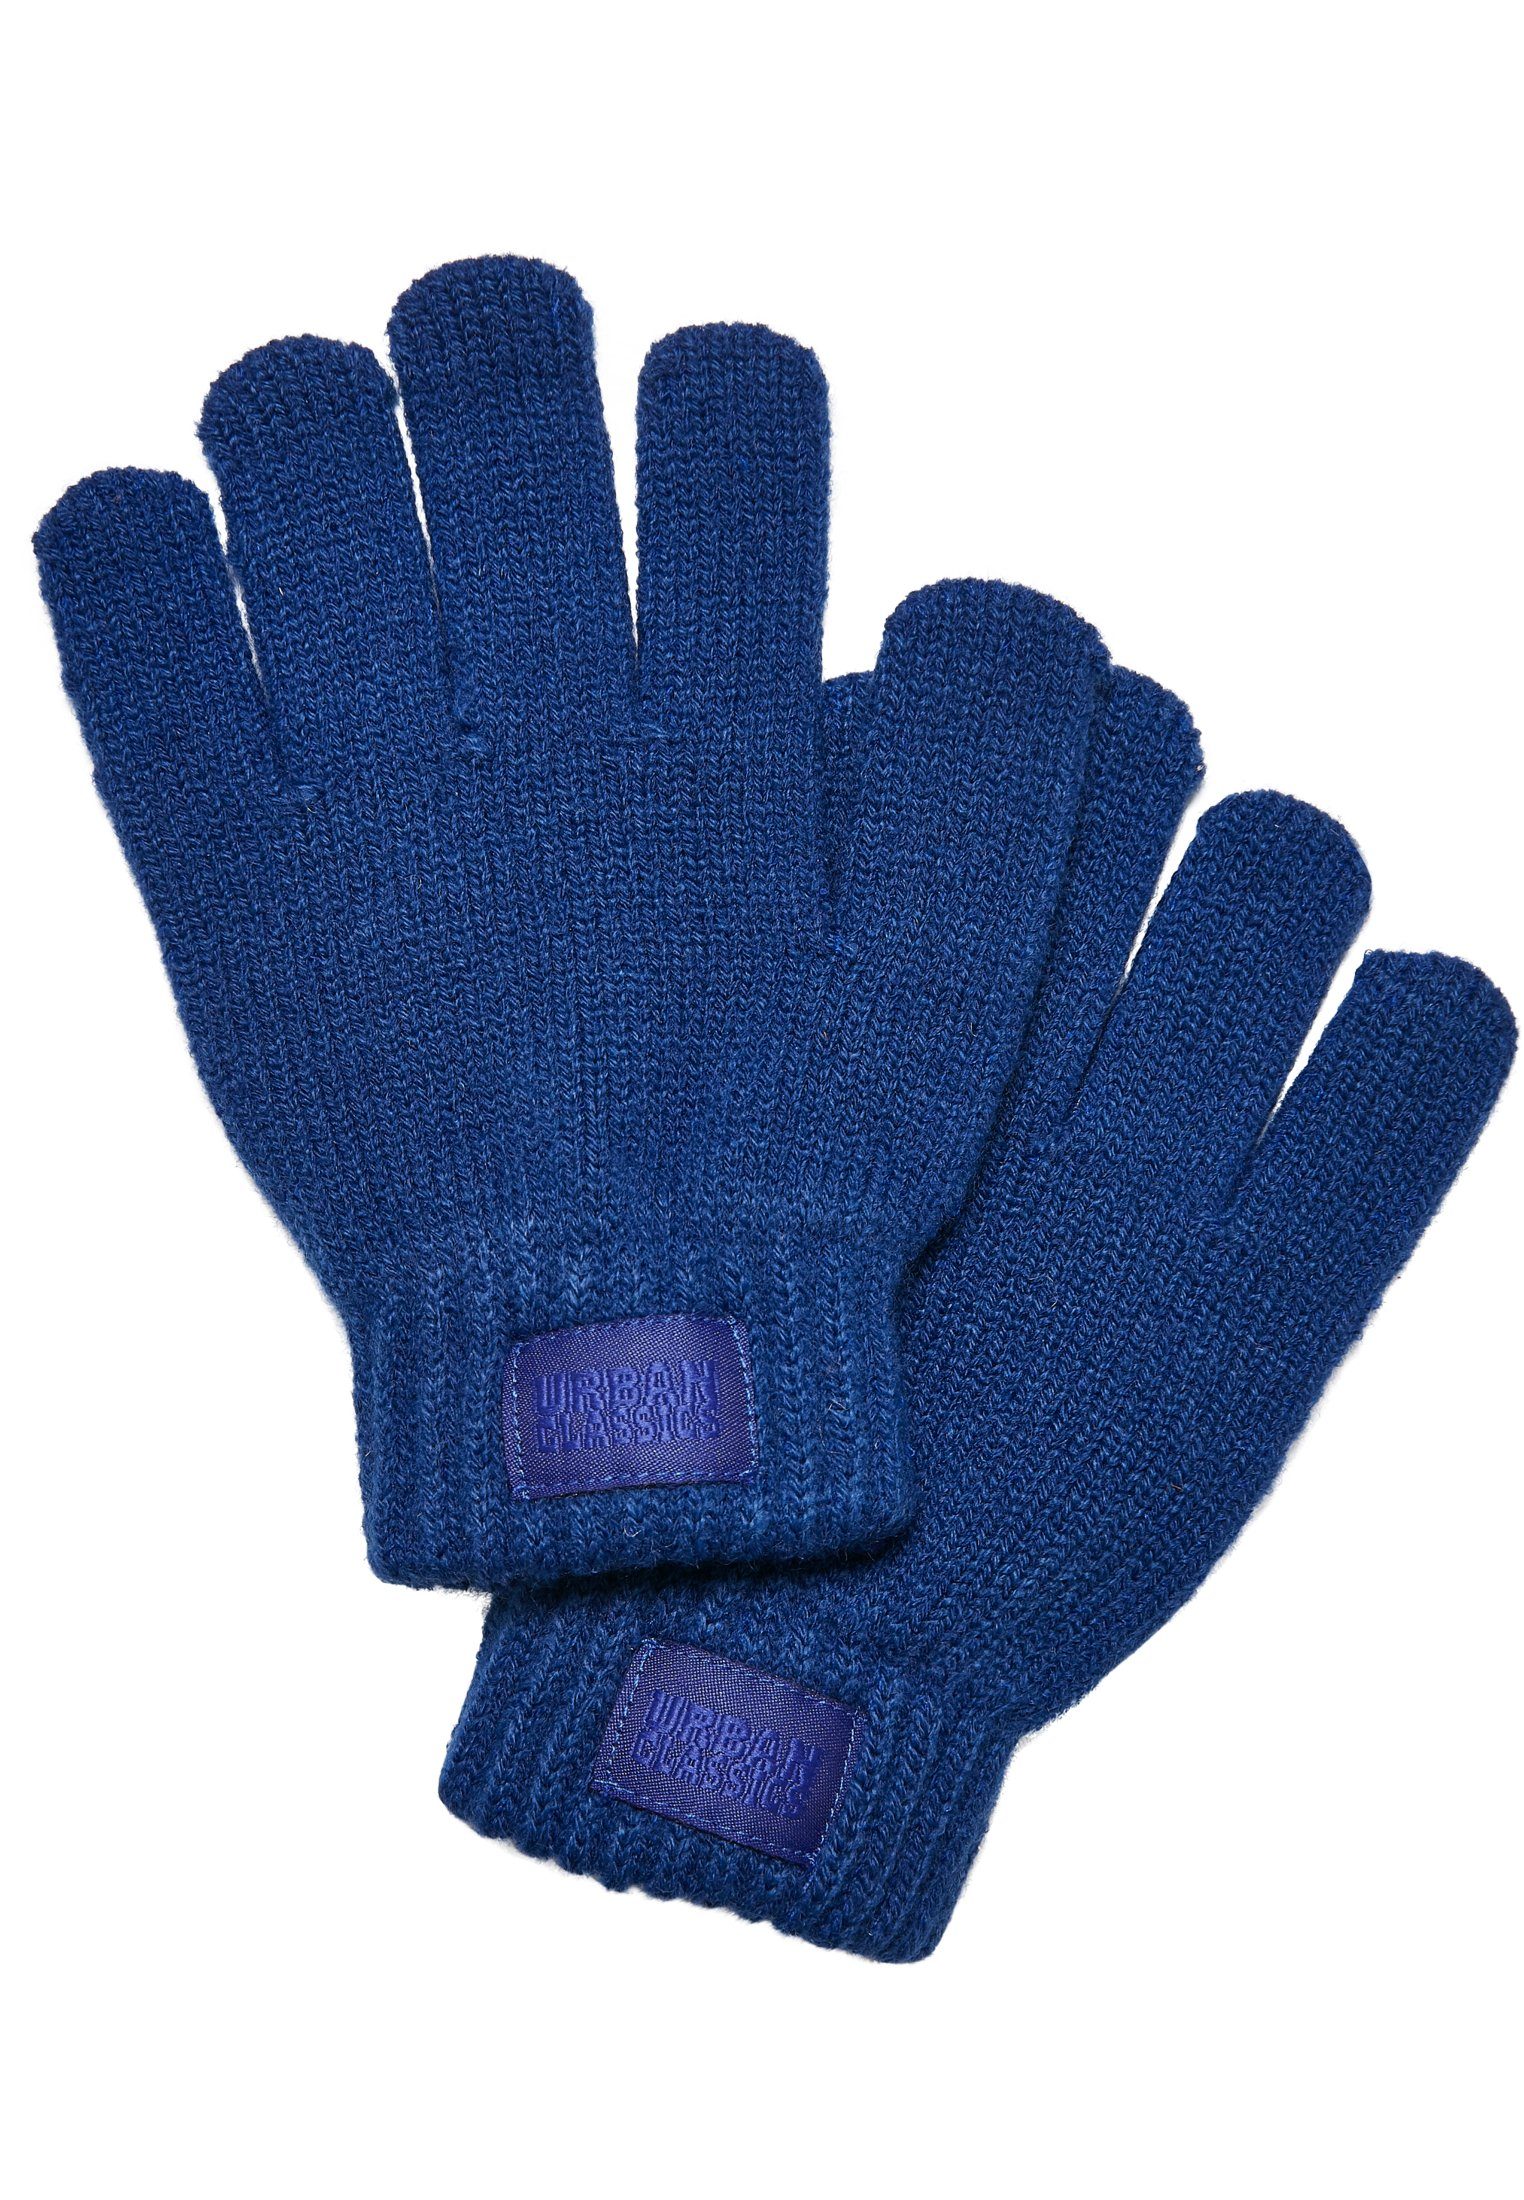 URBAN CLASSICS Baumwollhandschuhe Unisex Knit Gloves Kids royal | Handschuhe